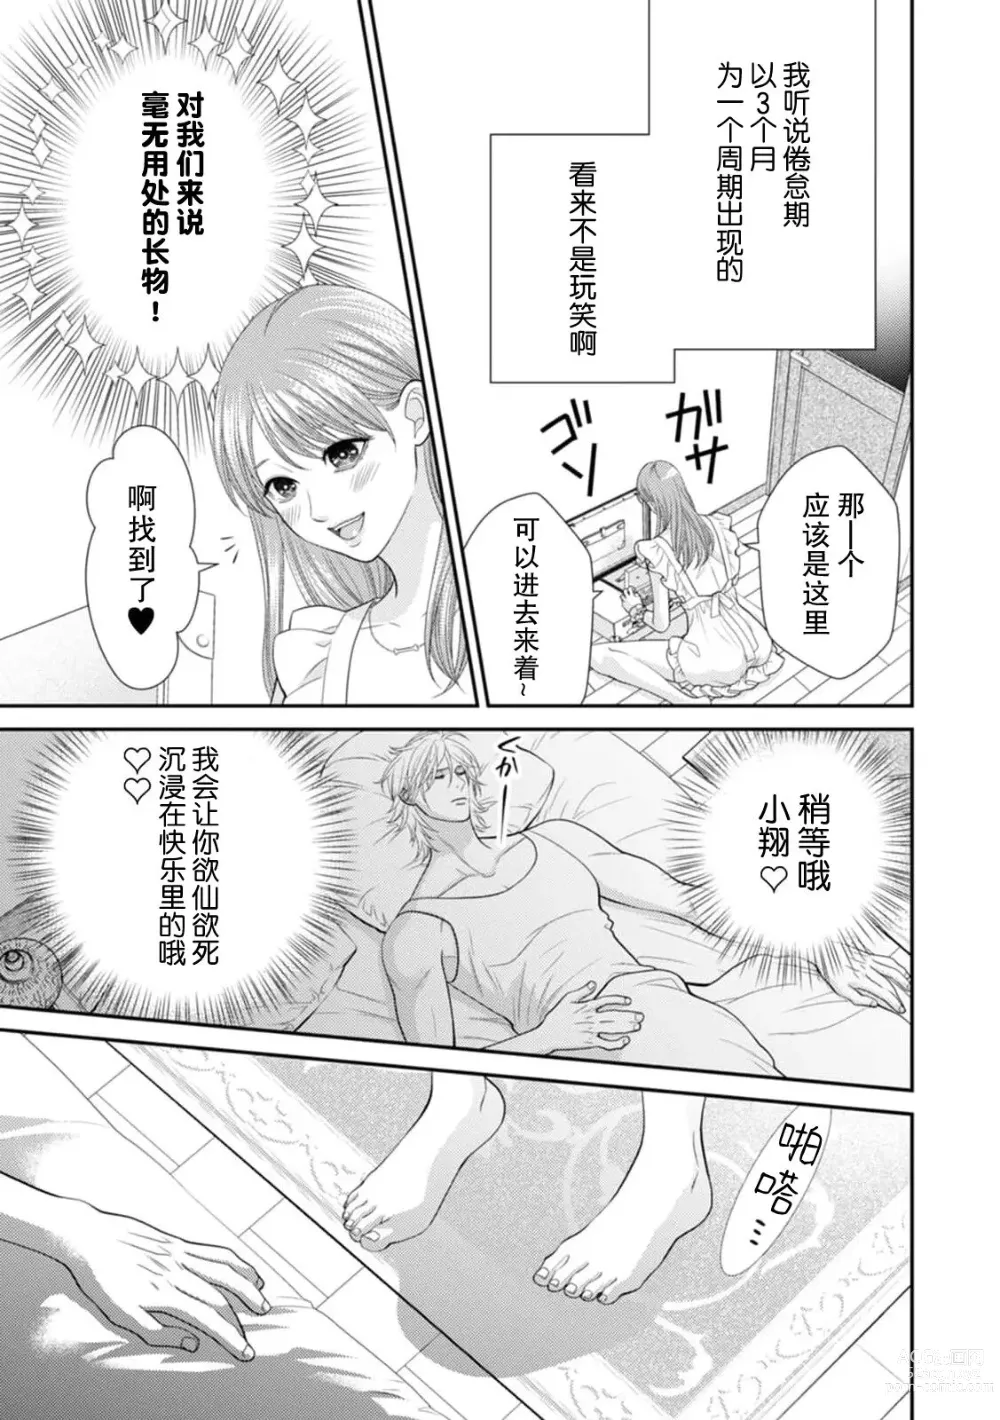 Page 4 of manga SM情侣的倦怠期！？被插入后无法停止的高潮